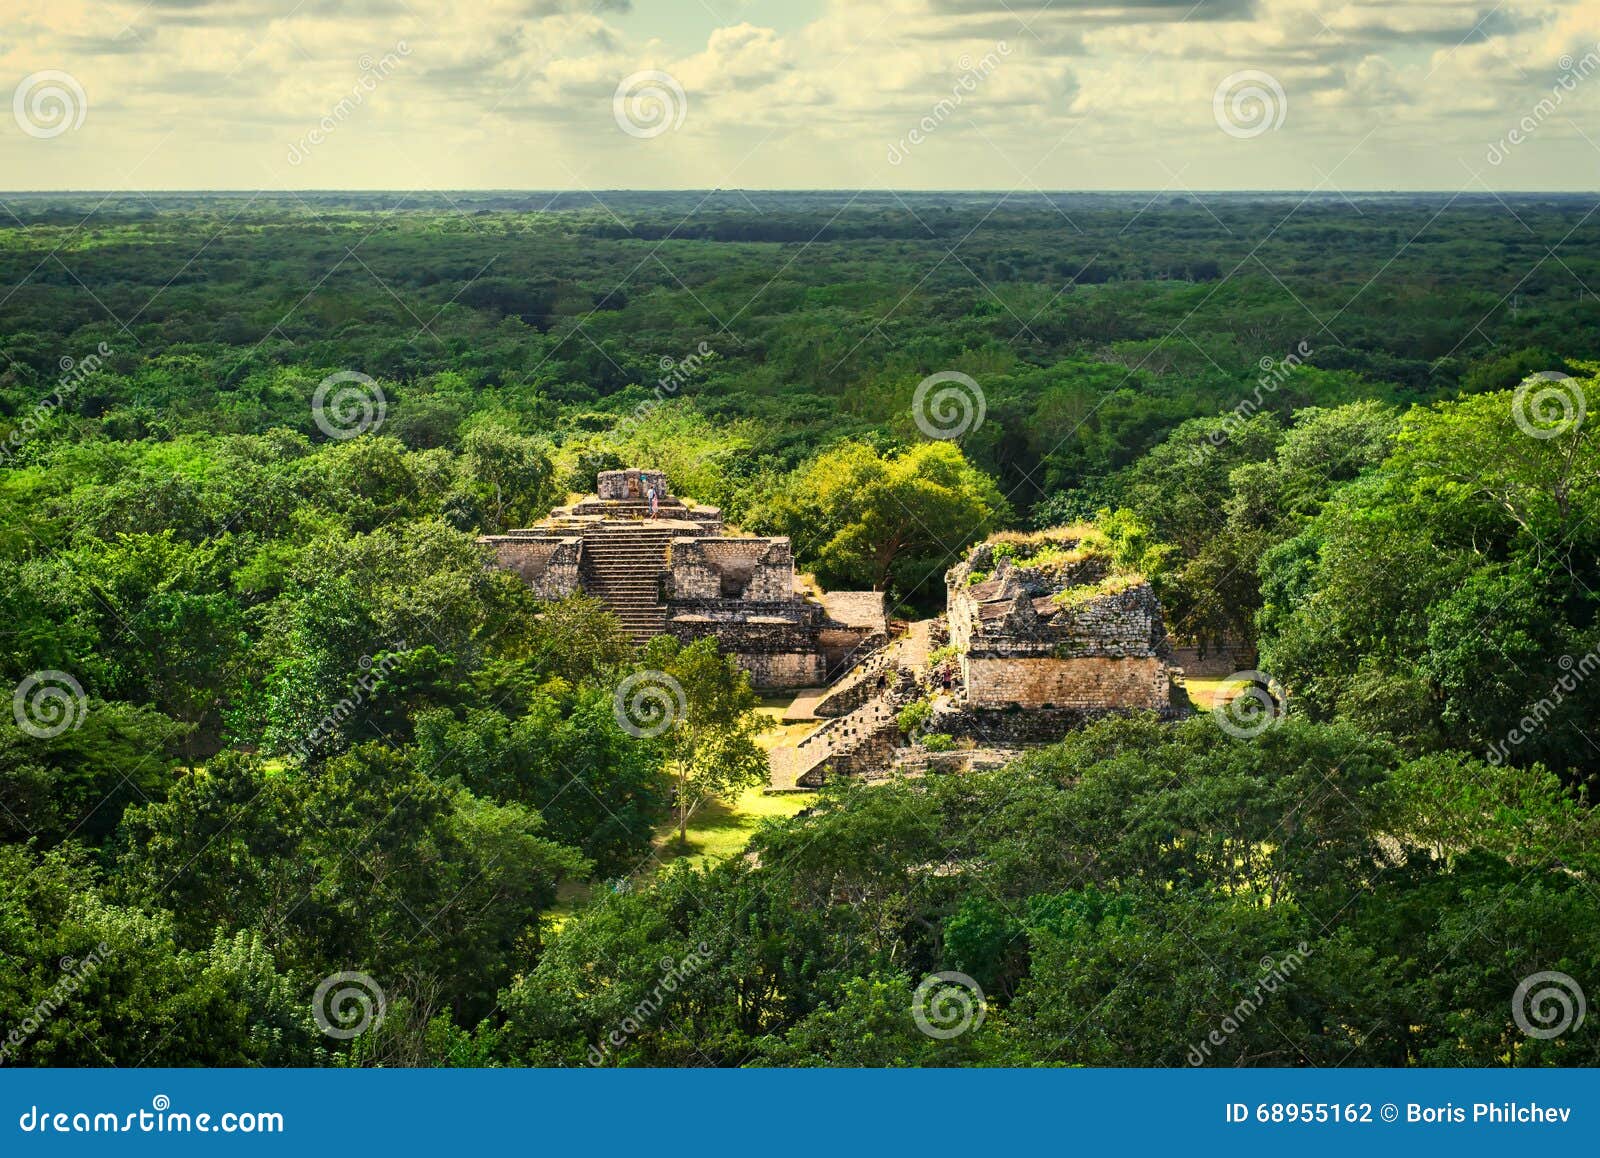 ek balam mayan archeological site. maya ruins, yucatan peninsula